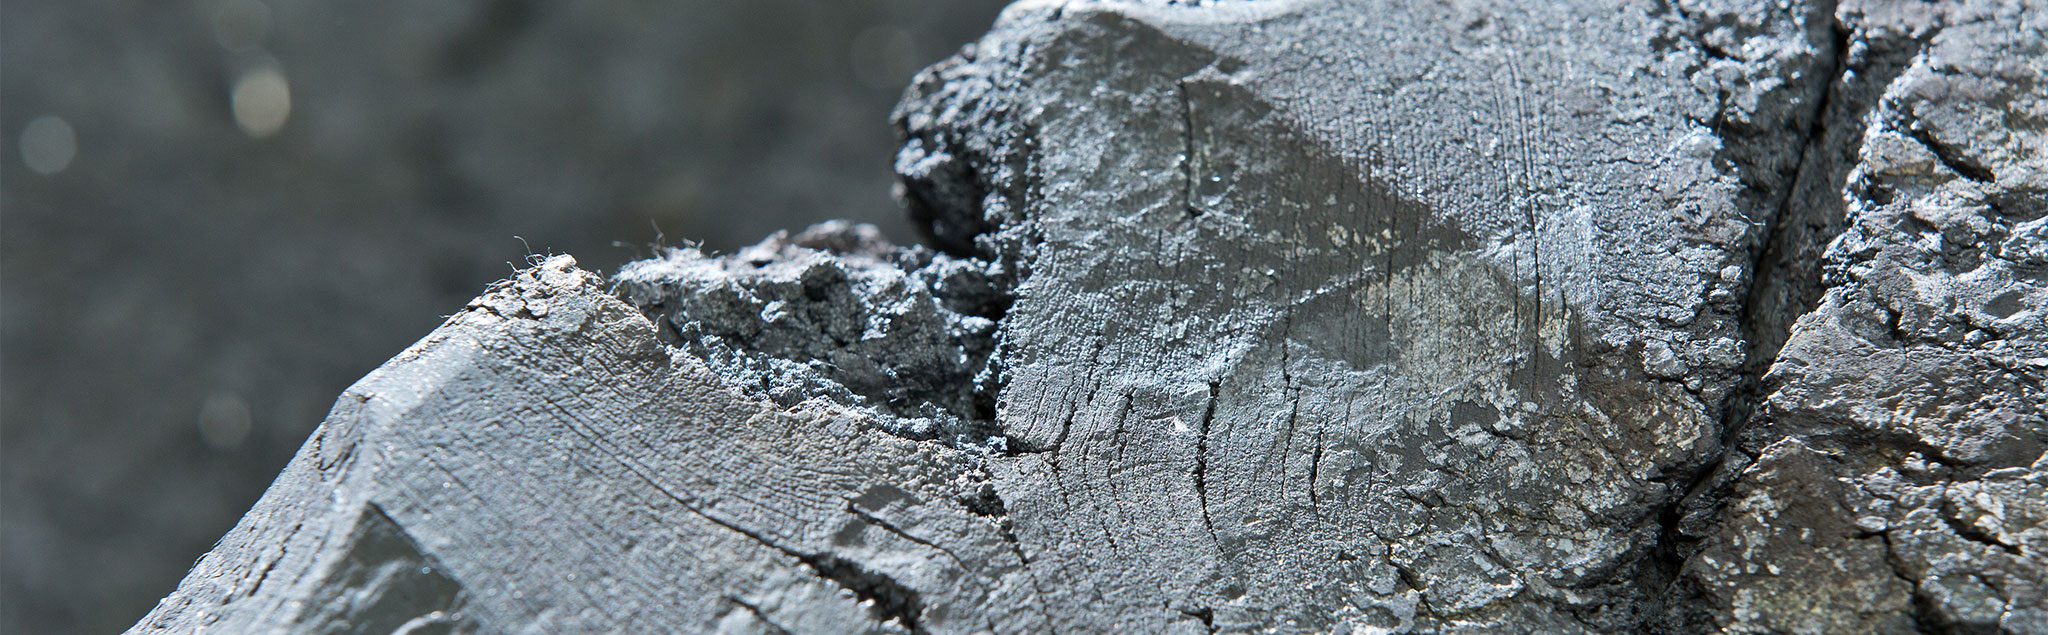 Nickel-Eisen anstatt Platin für billigen Wasserstoff